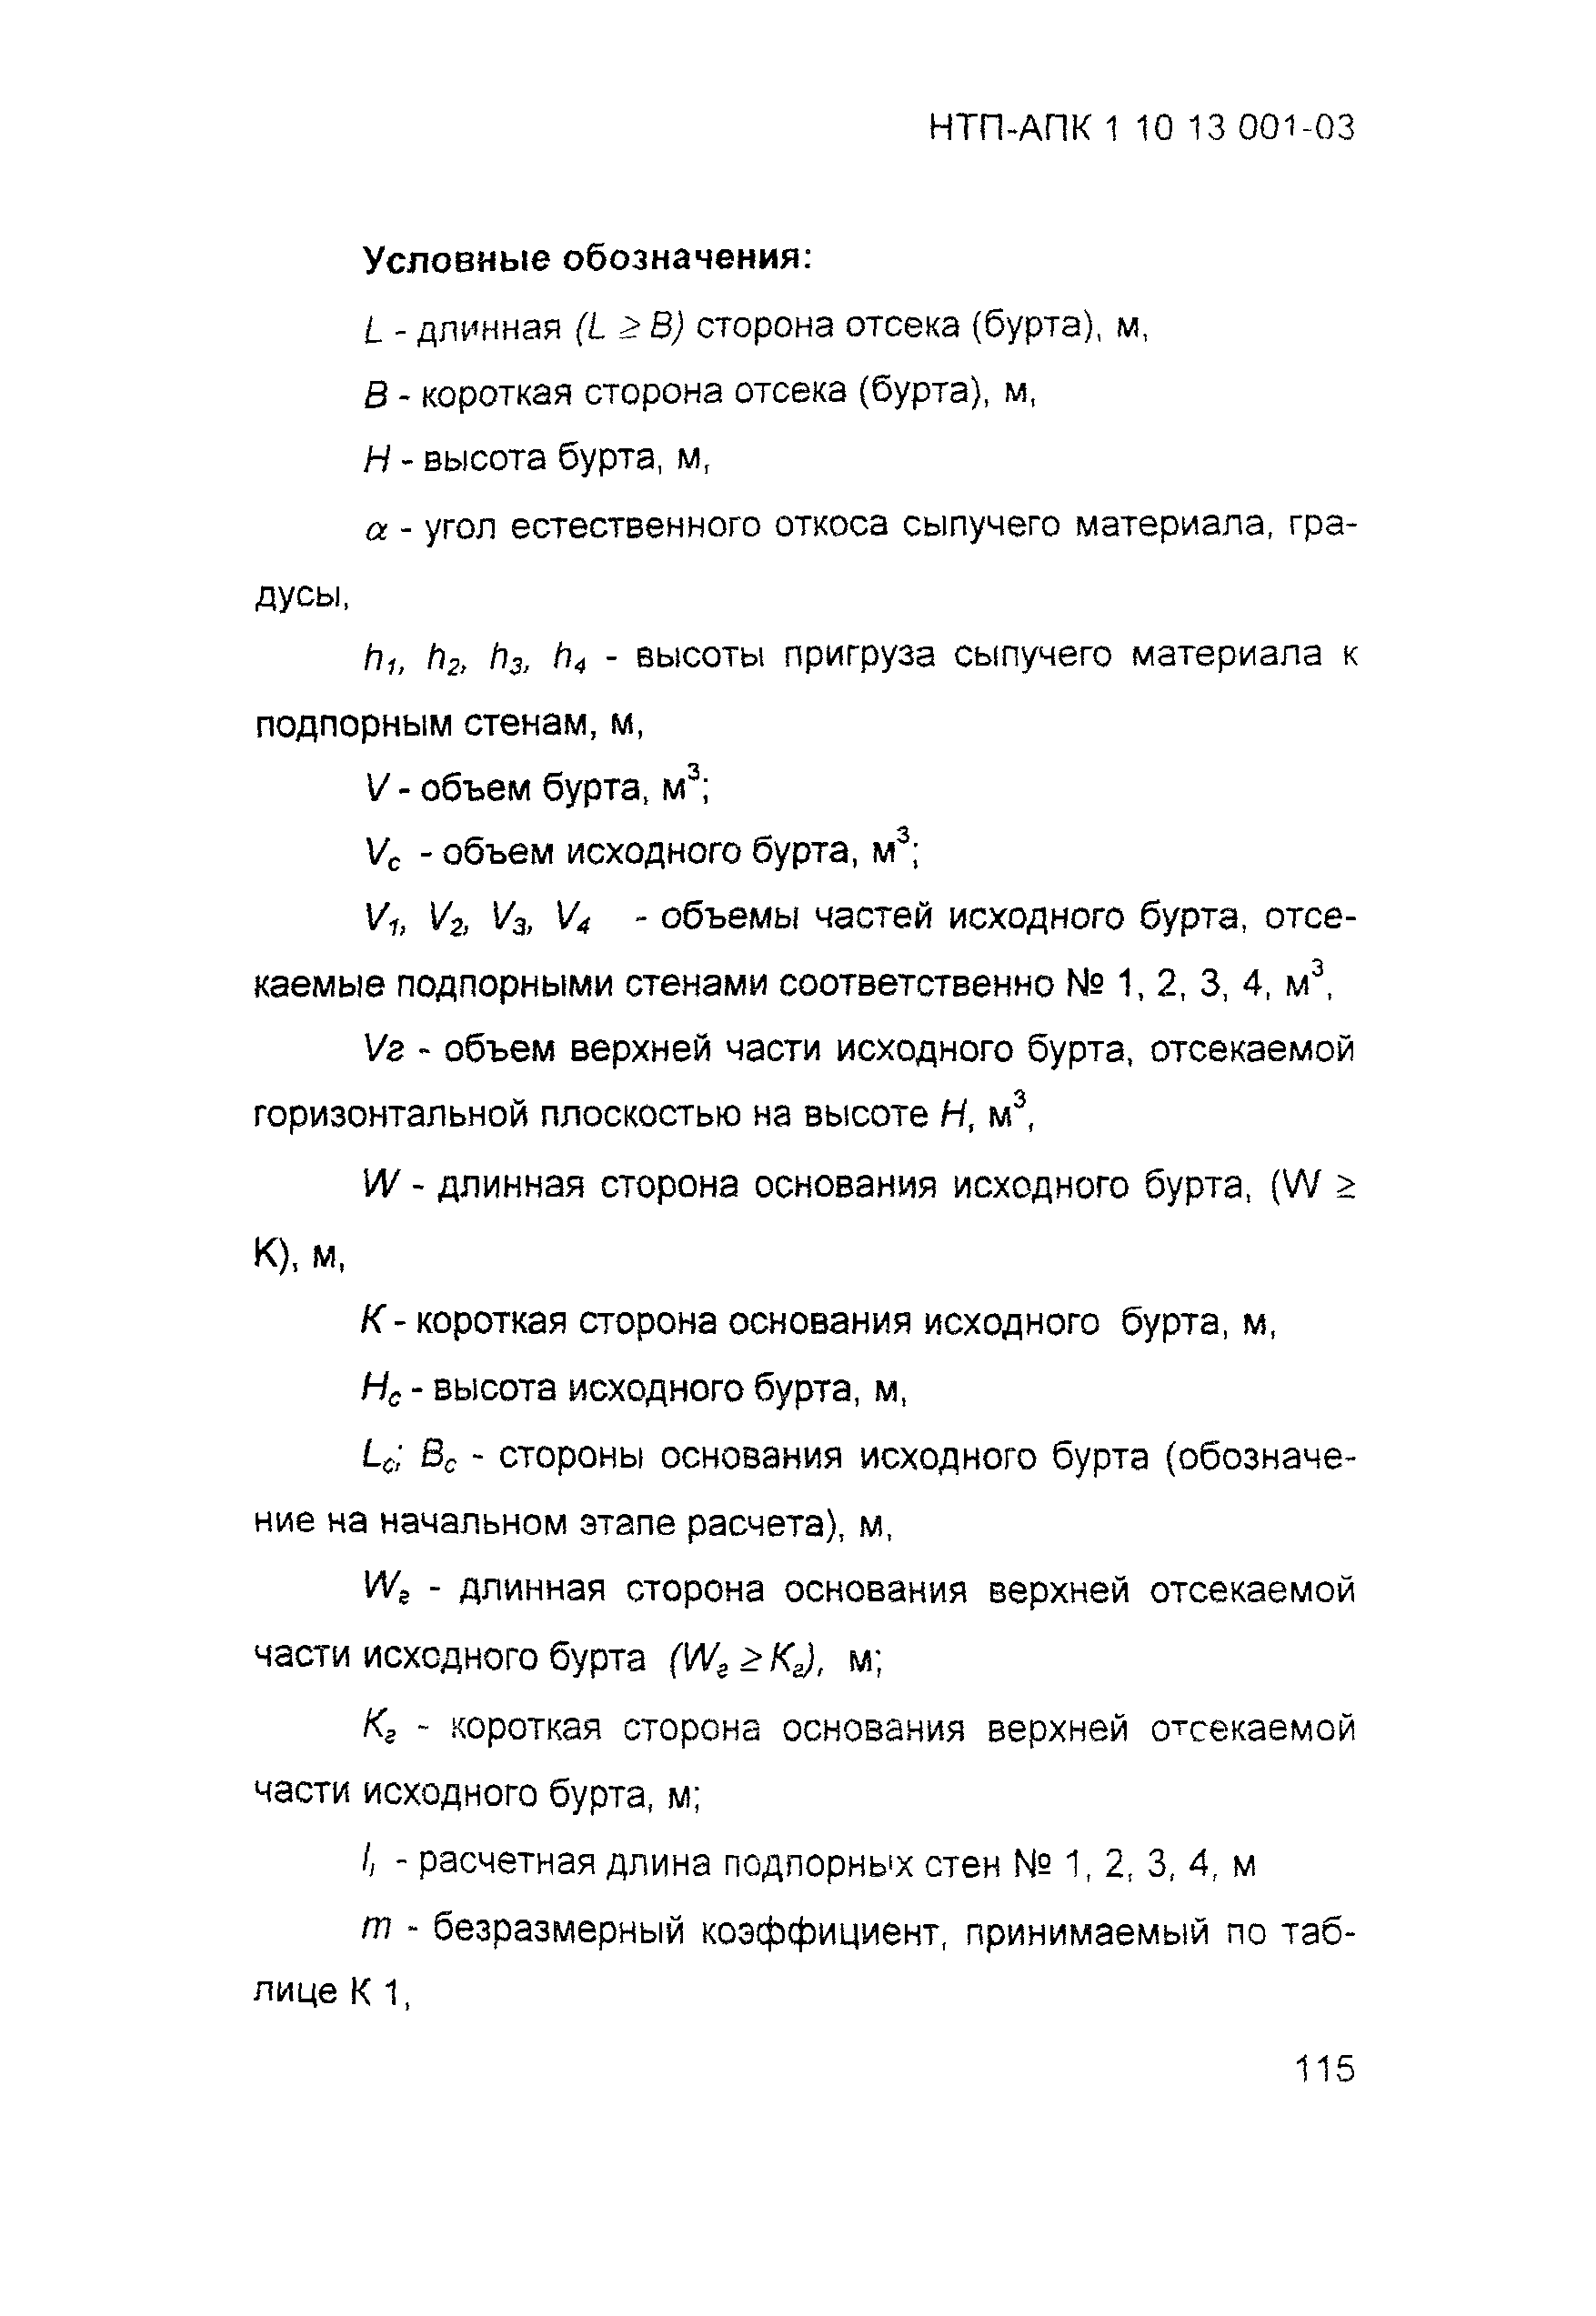 НТП АПК 1.10.13.001-03